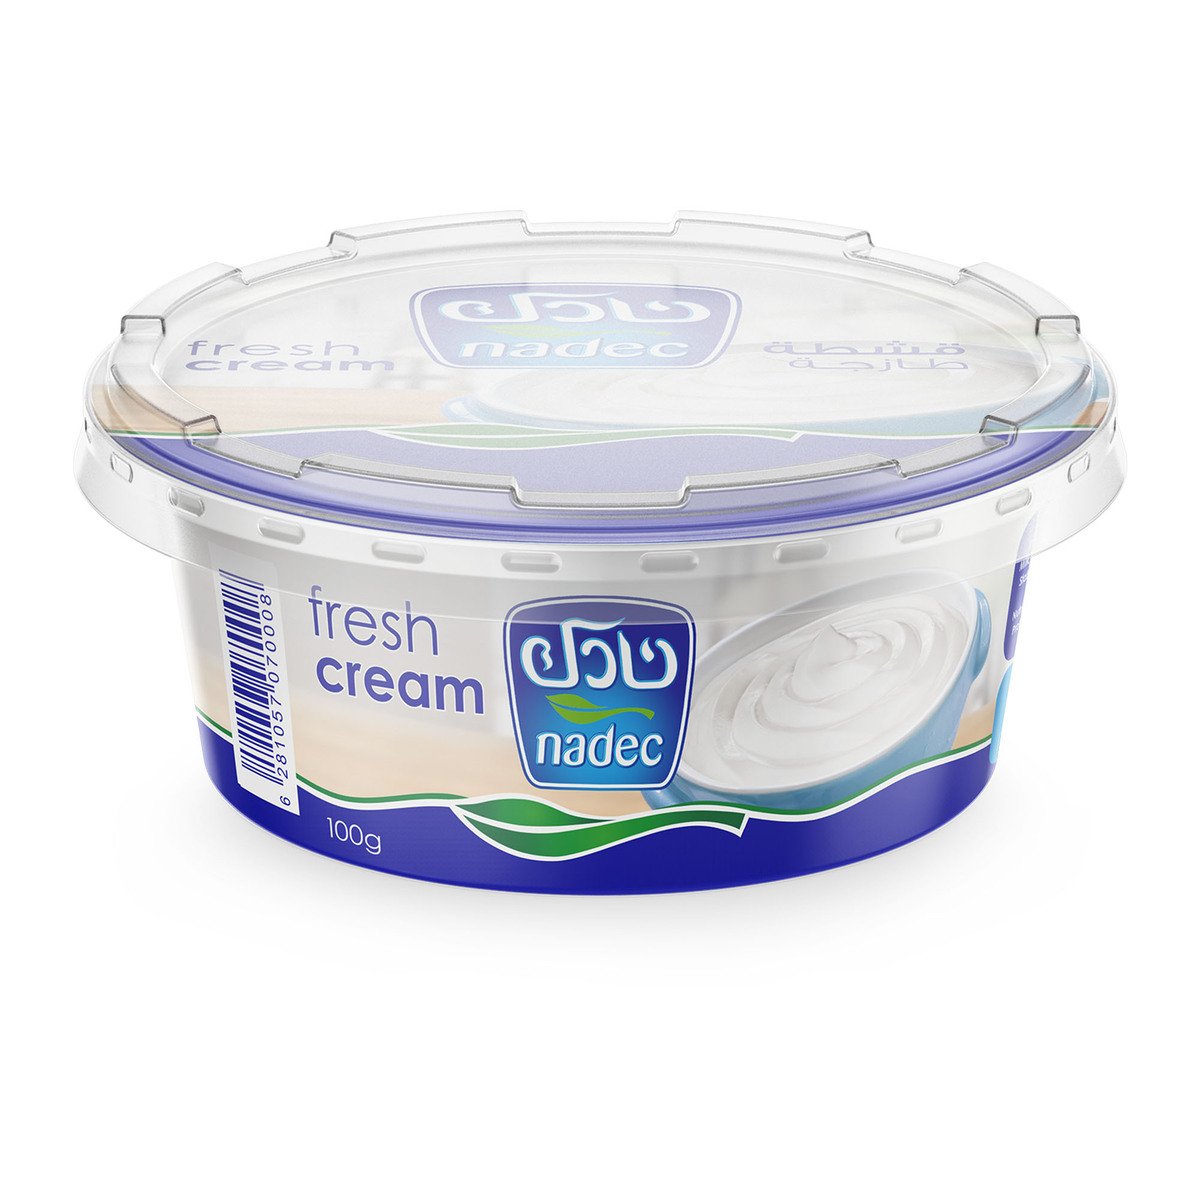 اشتري قم بشراء نادك قشطة طازجة 100 جم Online at Best Price من الموقع - من لولو هايبر ماركت Fresh Cream في السعودية